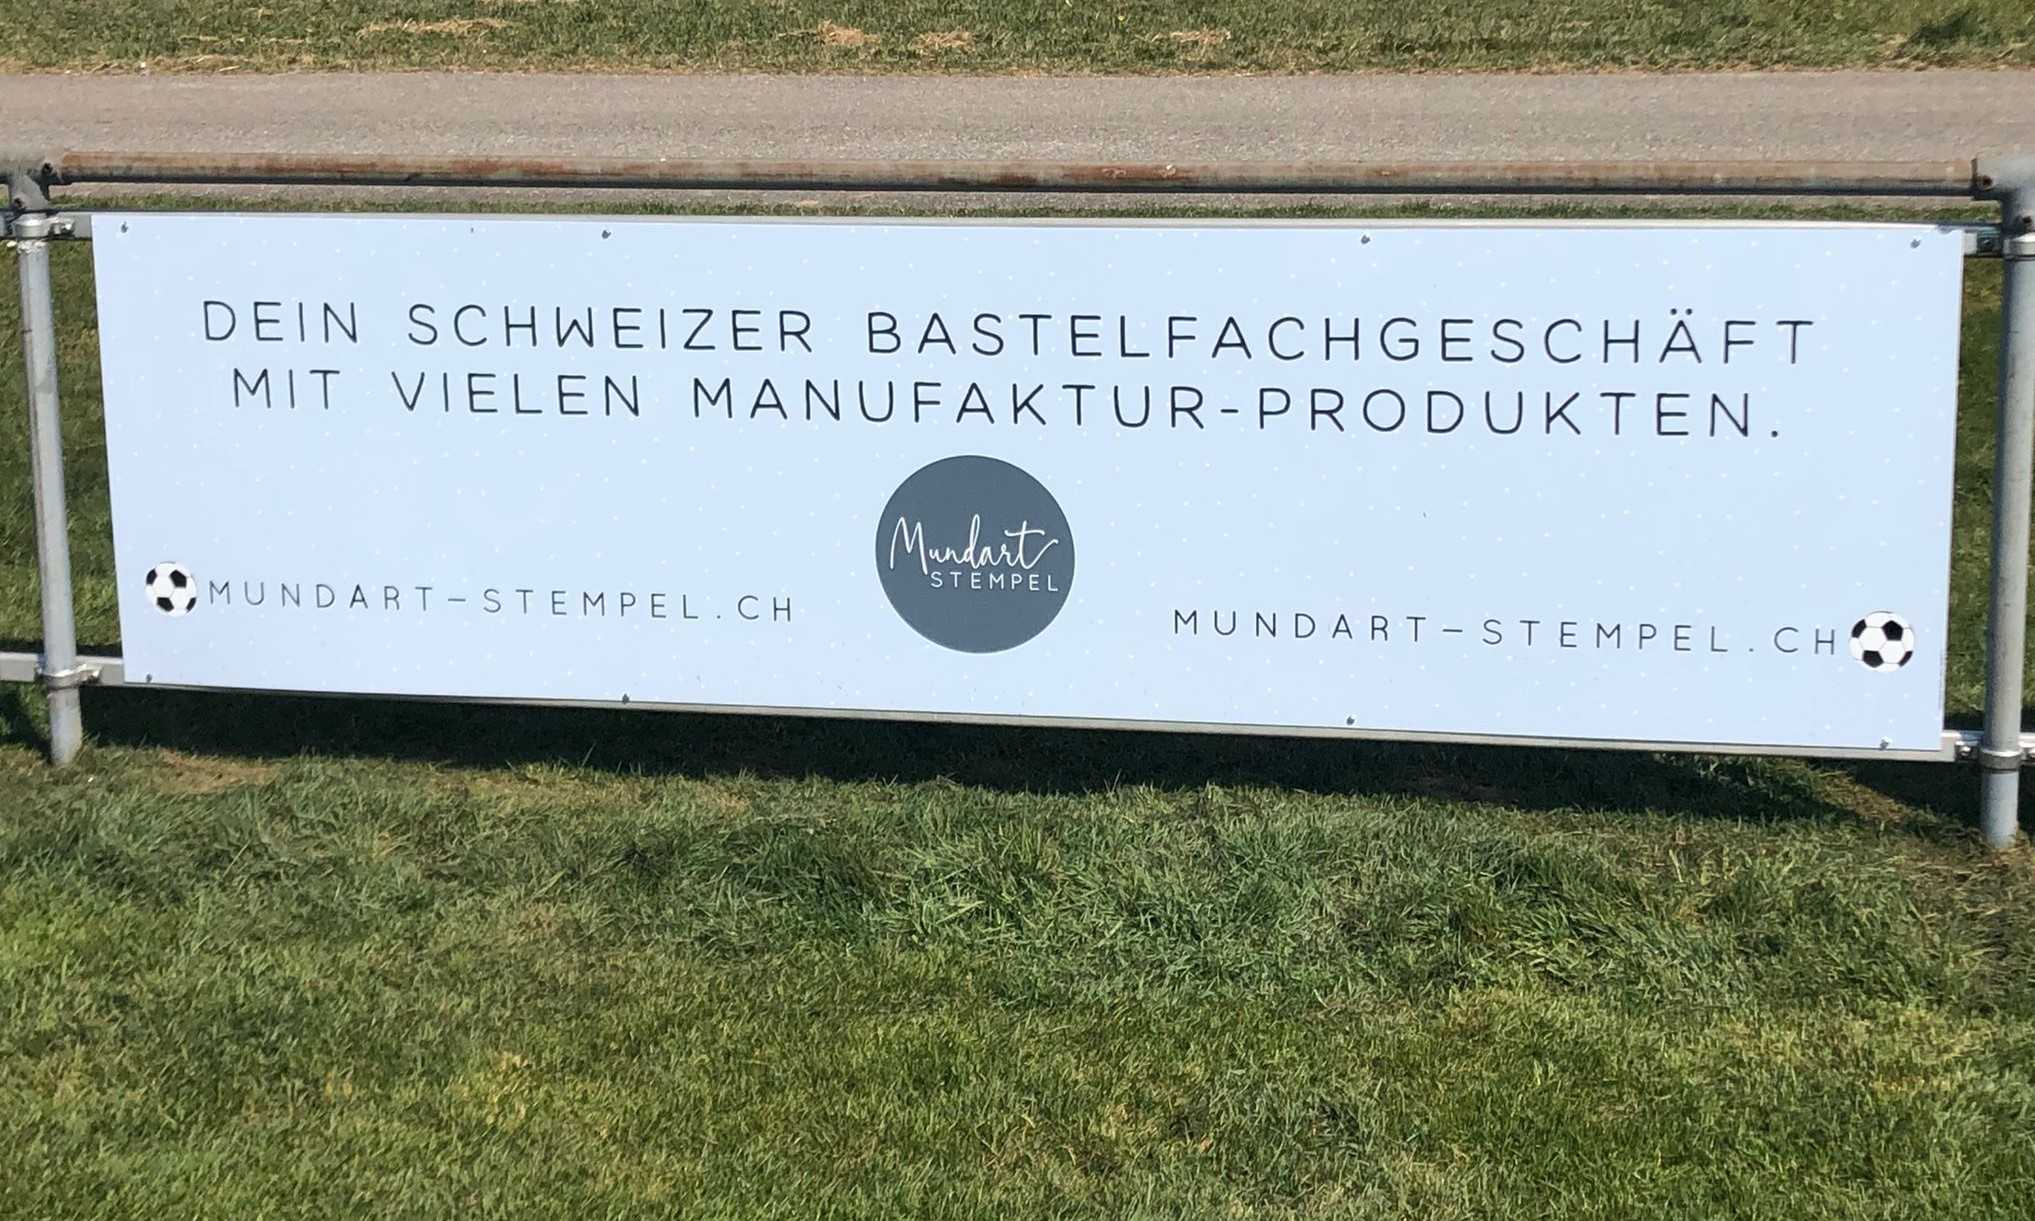 Mundart Stempel GmbH